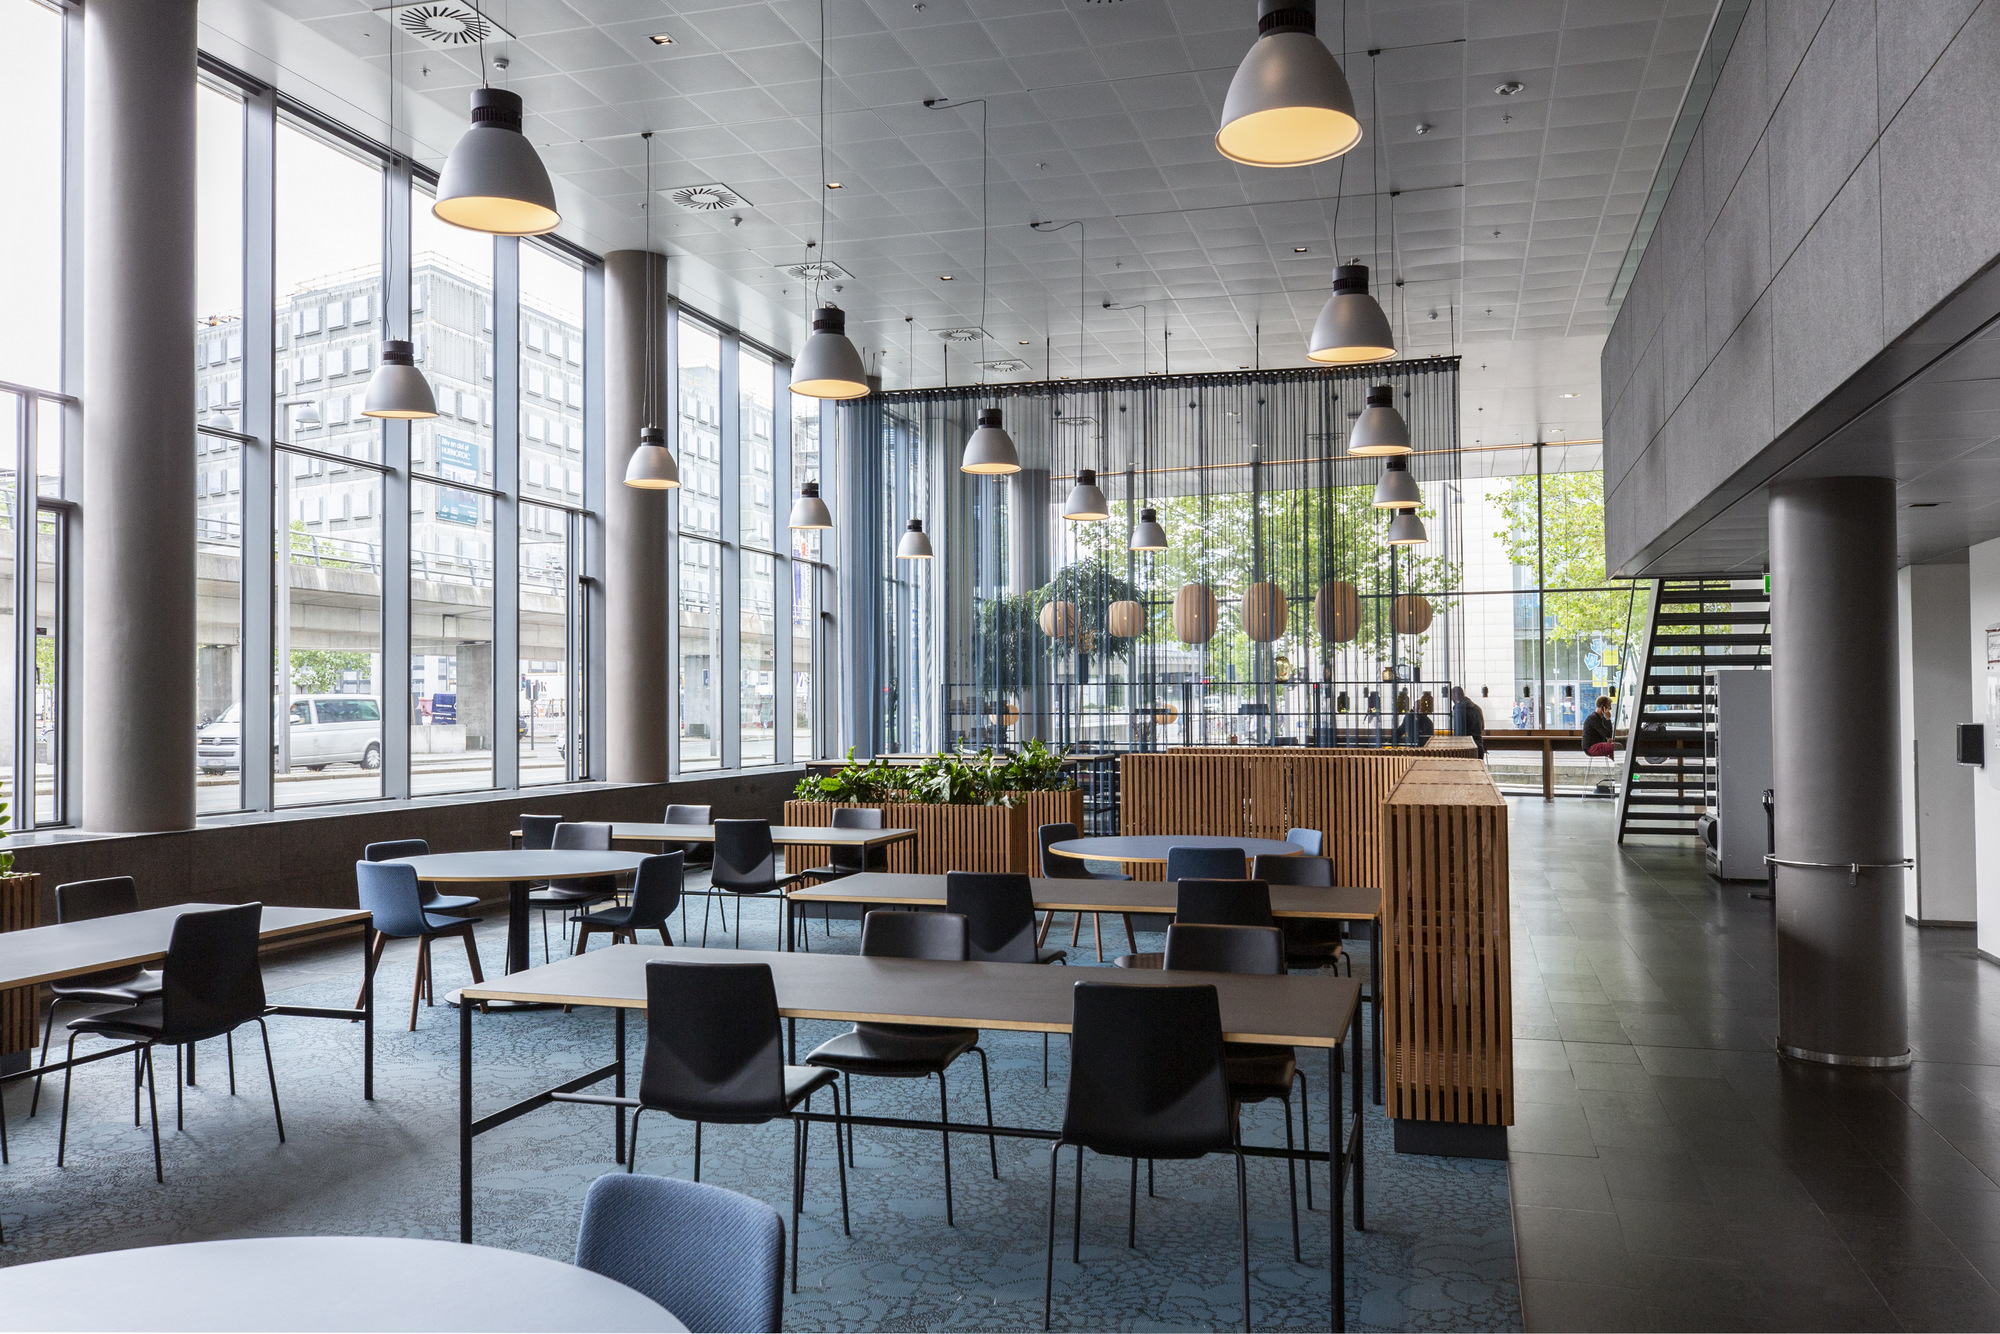 图片[3]|HUBNORDIC KLP Ejendomme咖啡馆纳布|ART-Arrakis | 建筑室内设计的创新与灵感